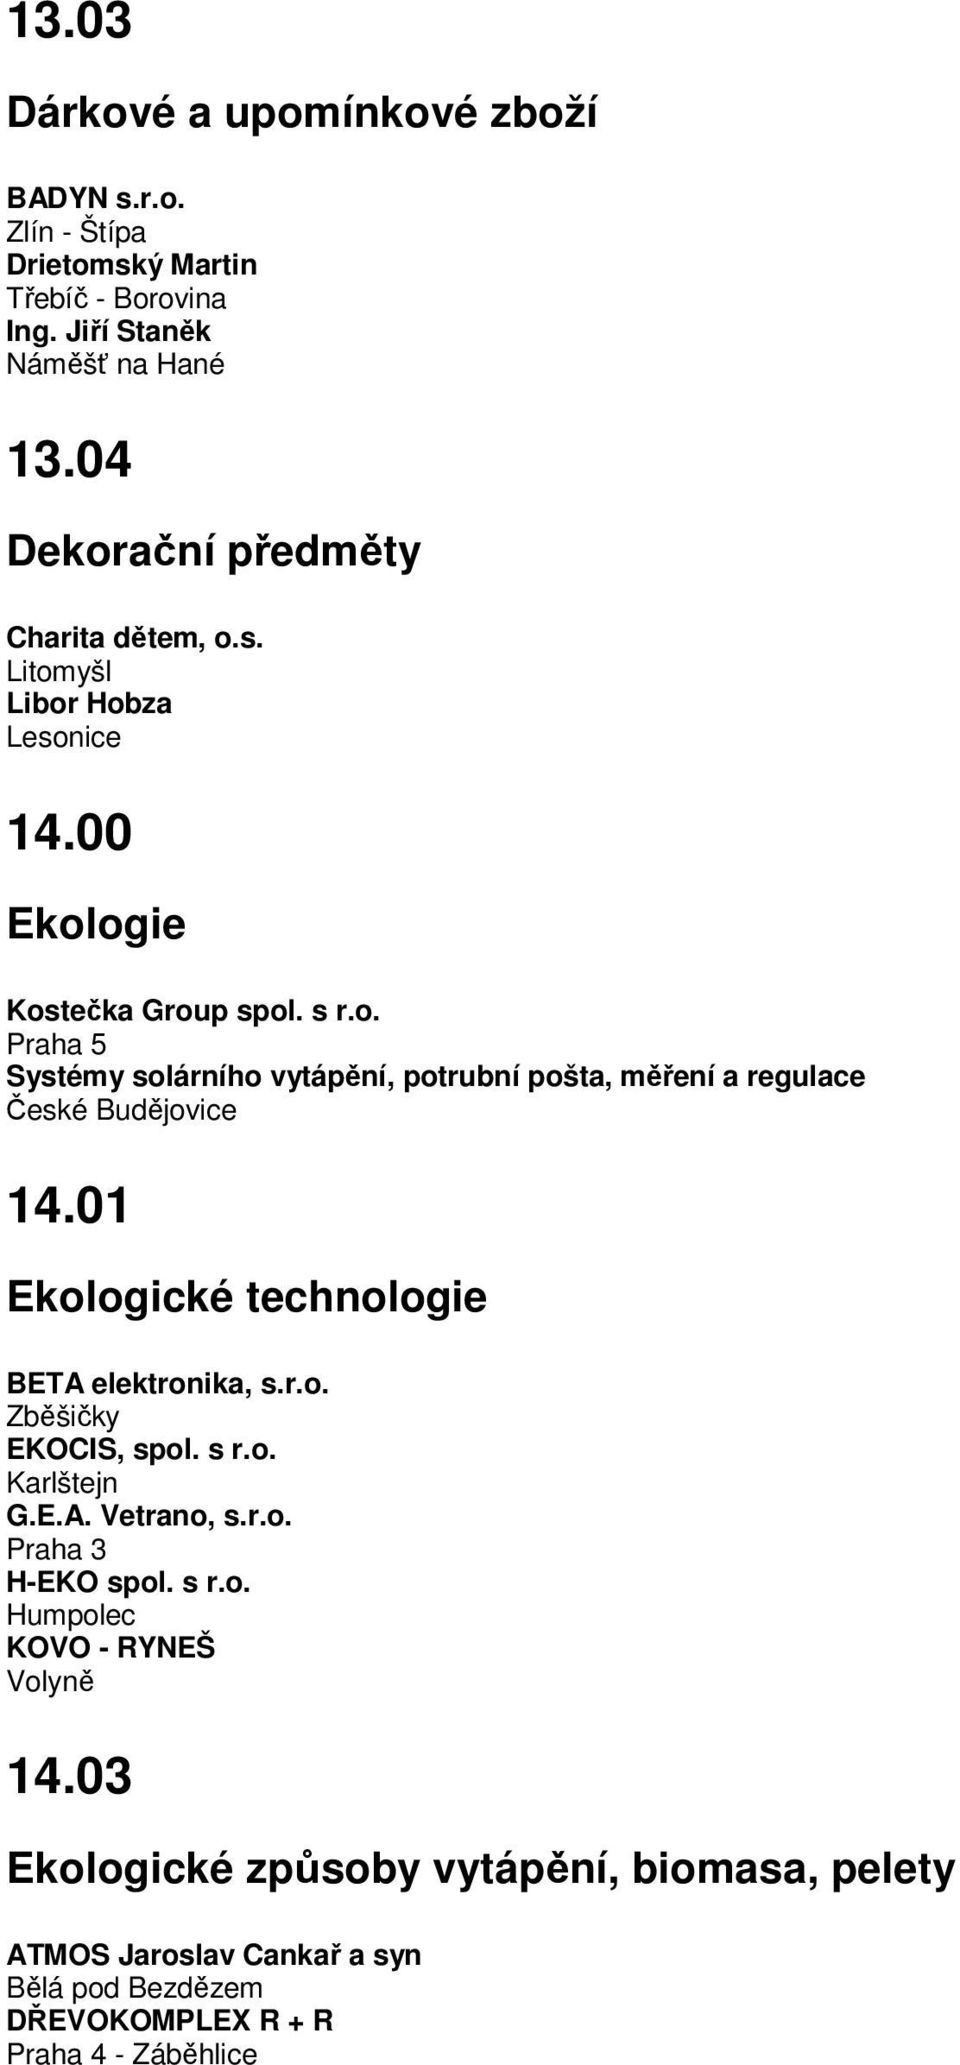 01 Ekologické technologie BETA elektronika, s.r.o. Zběšičky EKOCIS, spol. s r.o. Karlštejn G.E.A. Vetrano, s.r.o. Praha 3 H-EKO spol. s r.o. Humpolec KOVO - RYNEŠ Volyně 14.